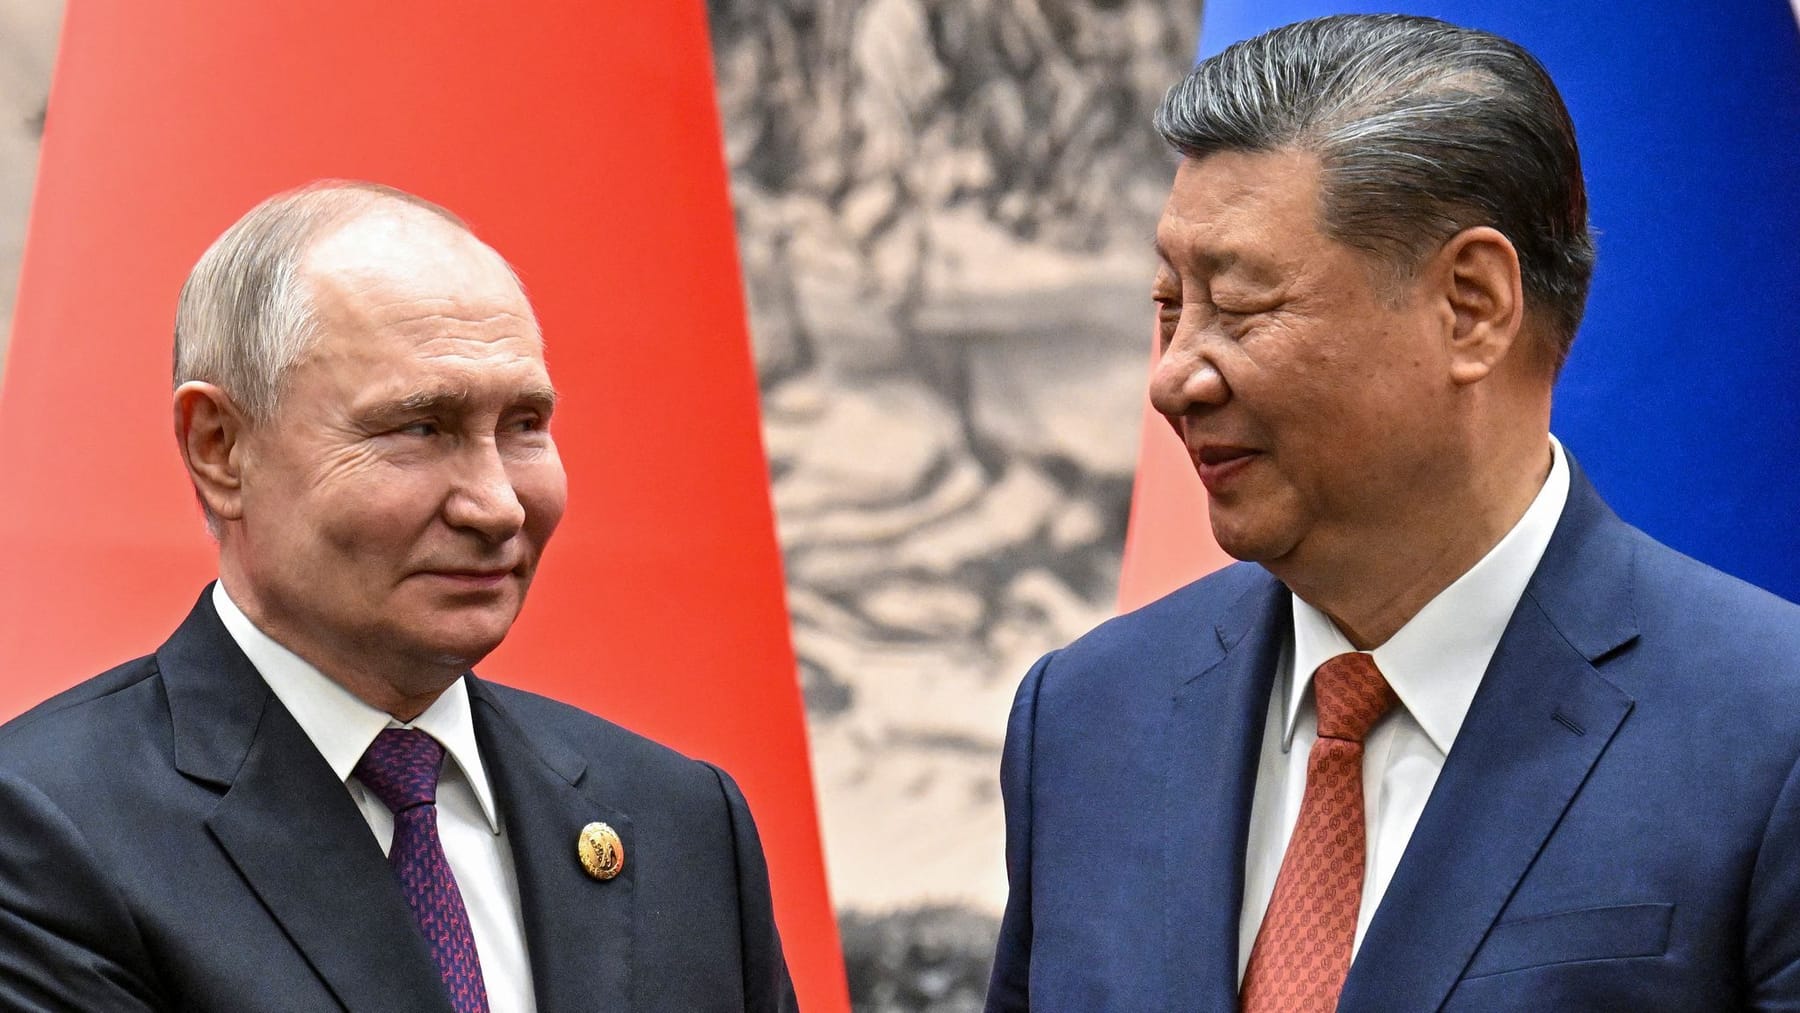 Russland und China: Pulverfass im Nahen Osten? Darum muss Europa aufpassen...